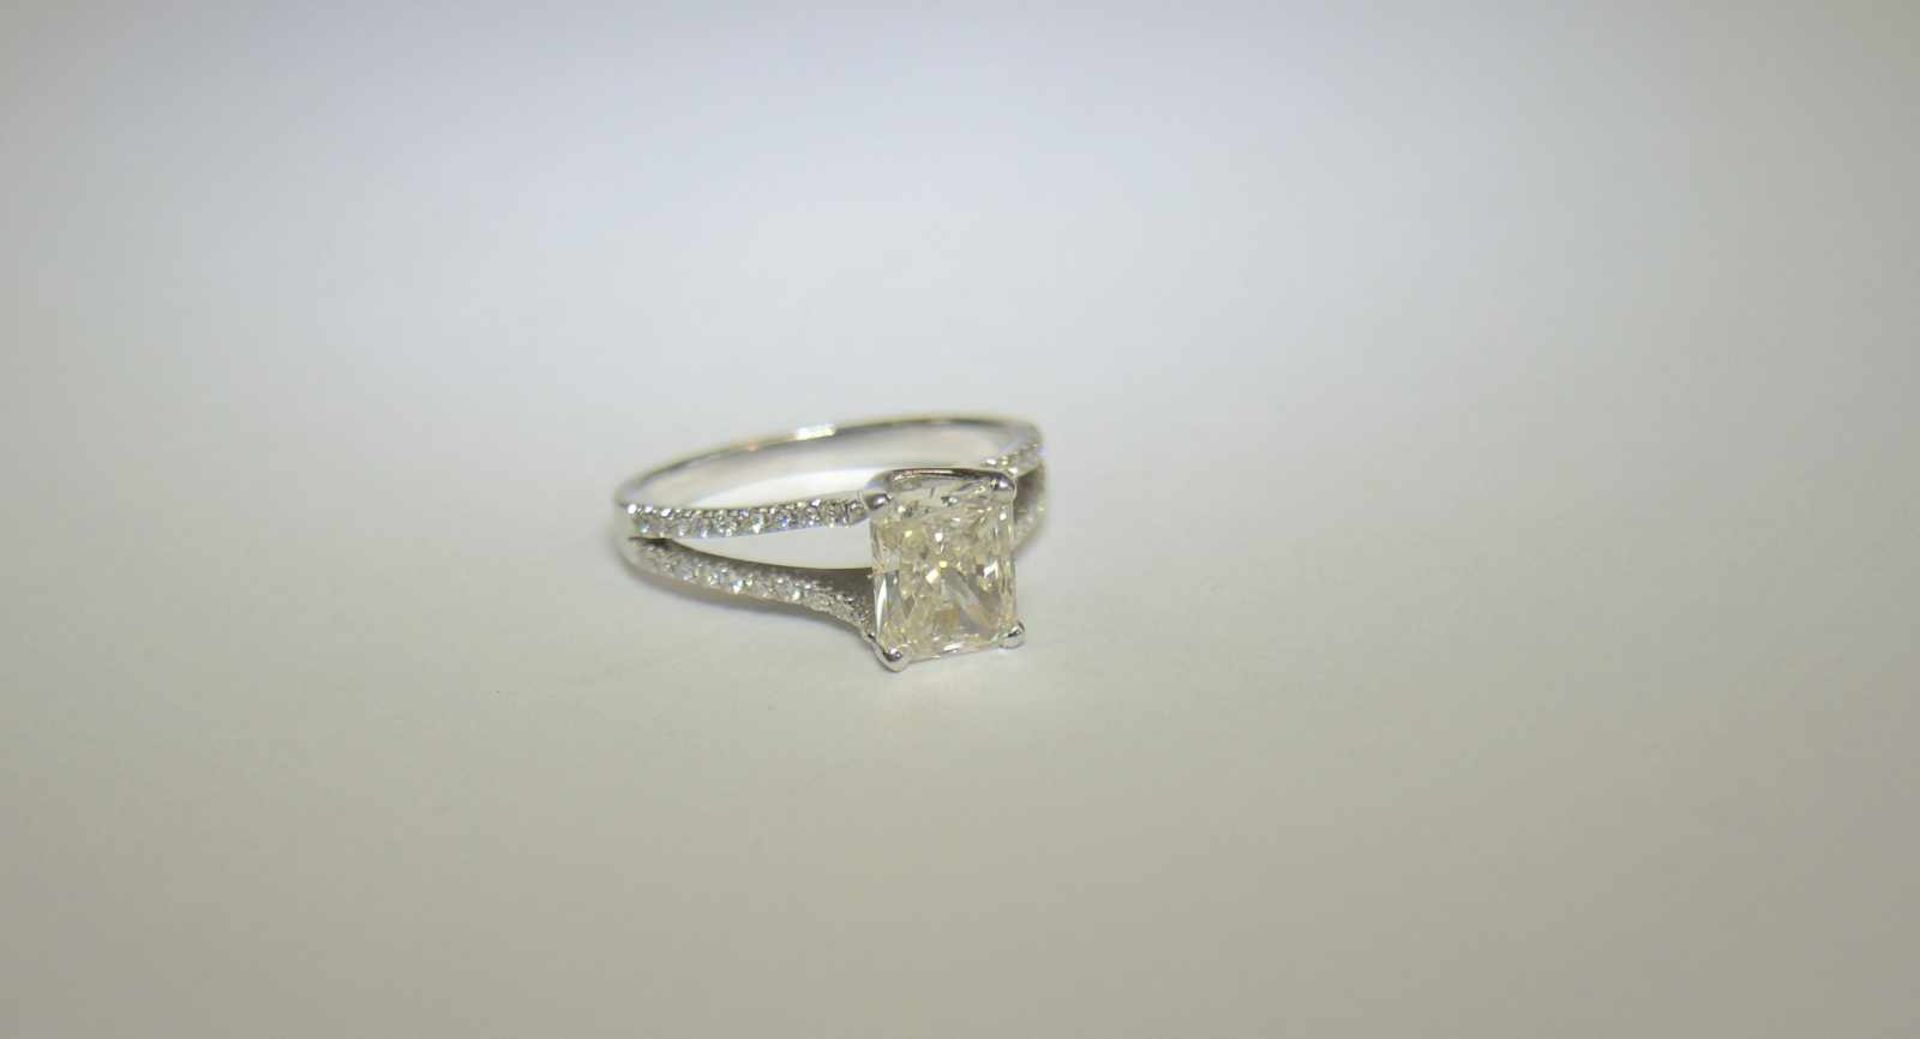 Diamant-Ring18 K. Weißgold. 1 Diamant im Radiant-Schliff von ca. 1,50 ct. Farbe: getöntes Weiß.